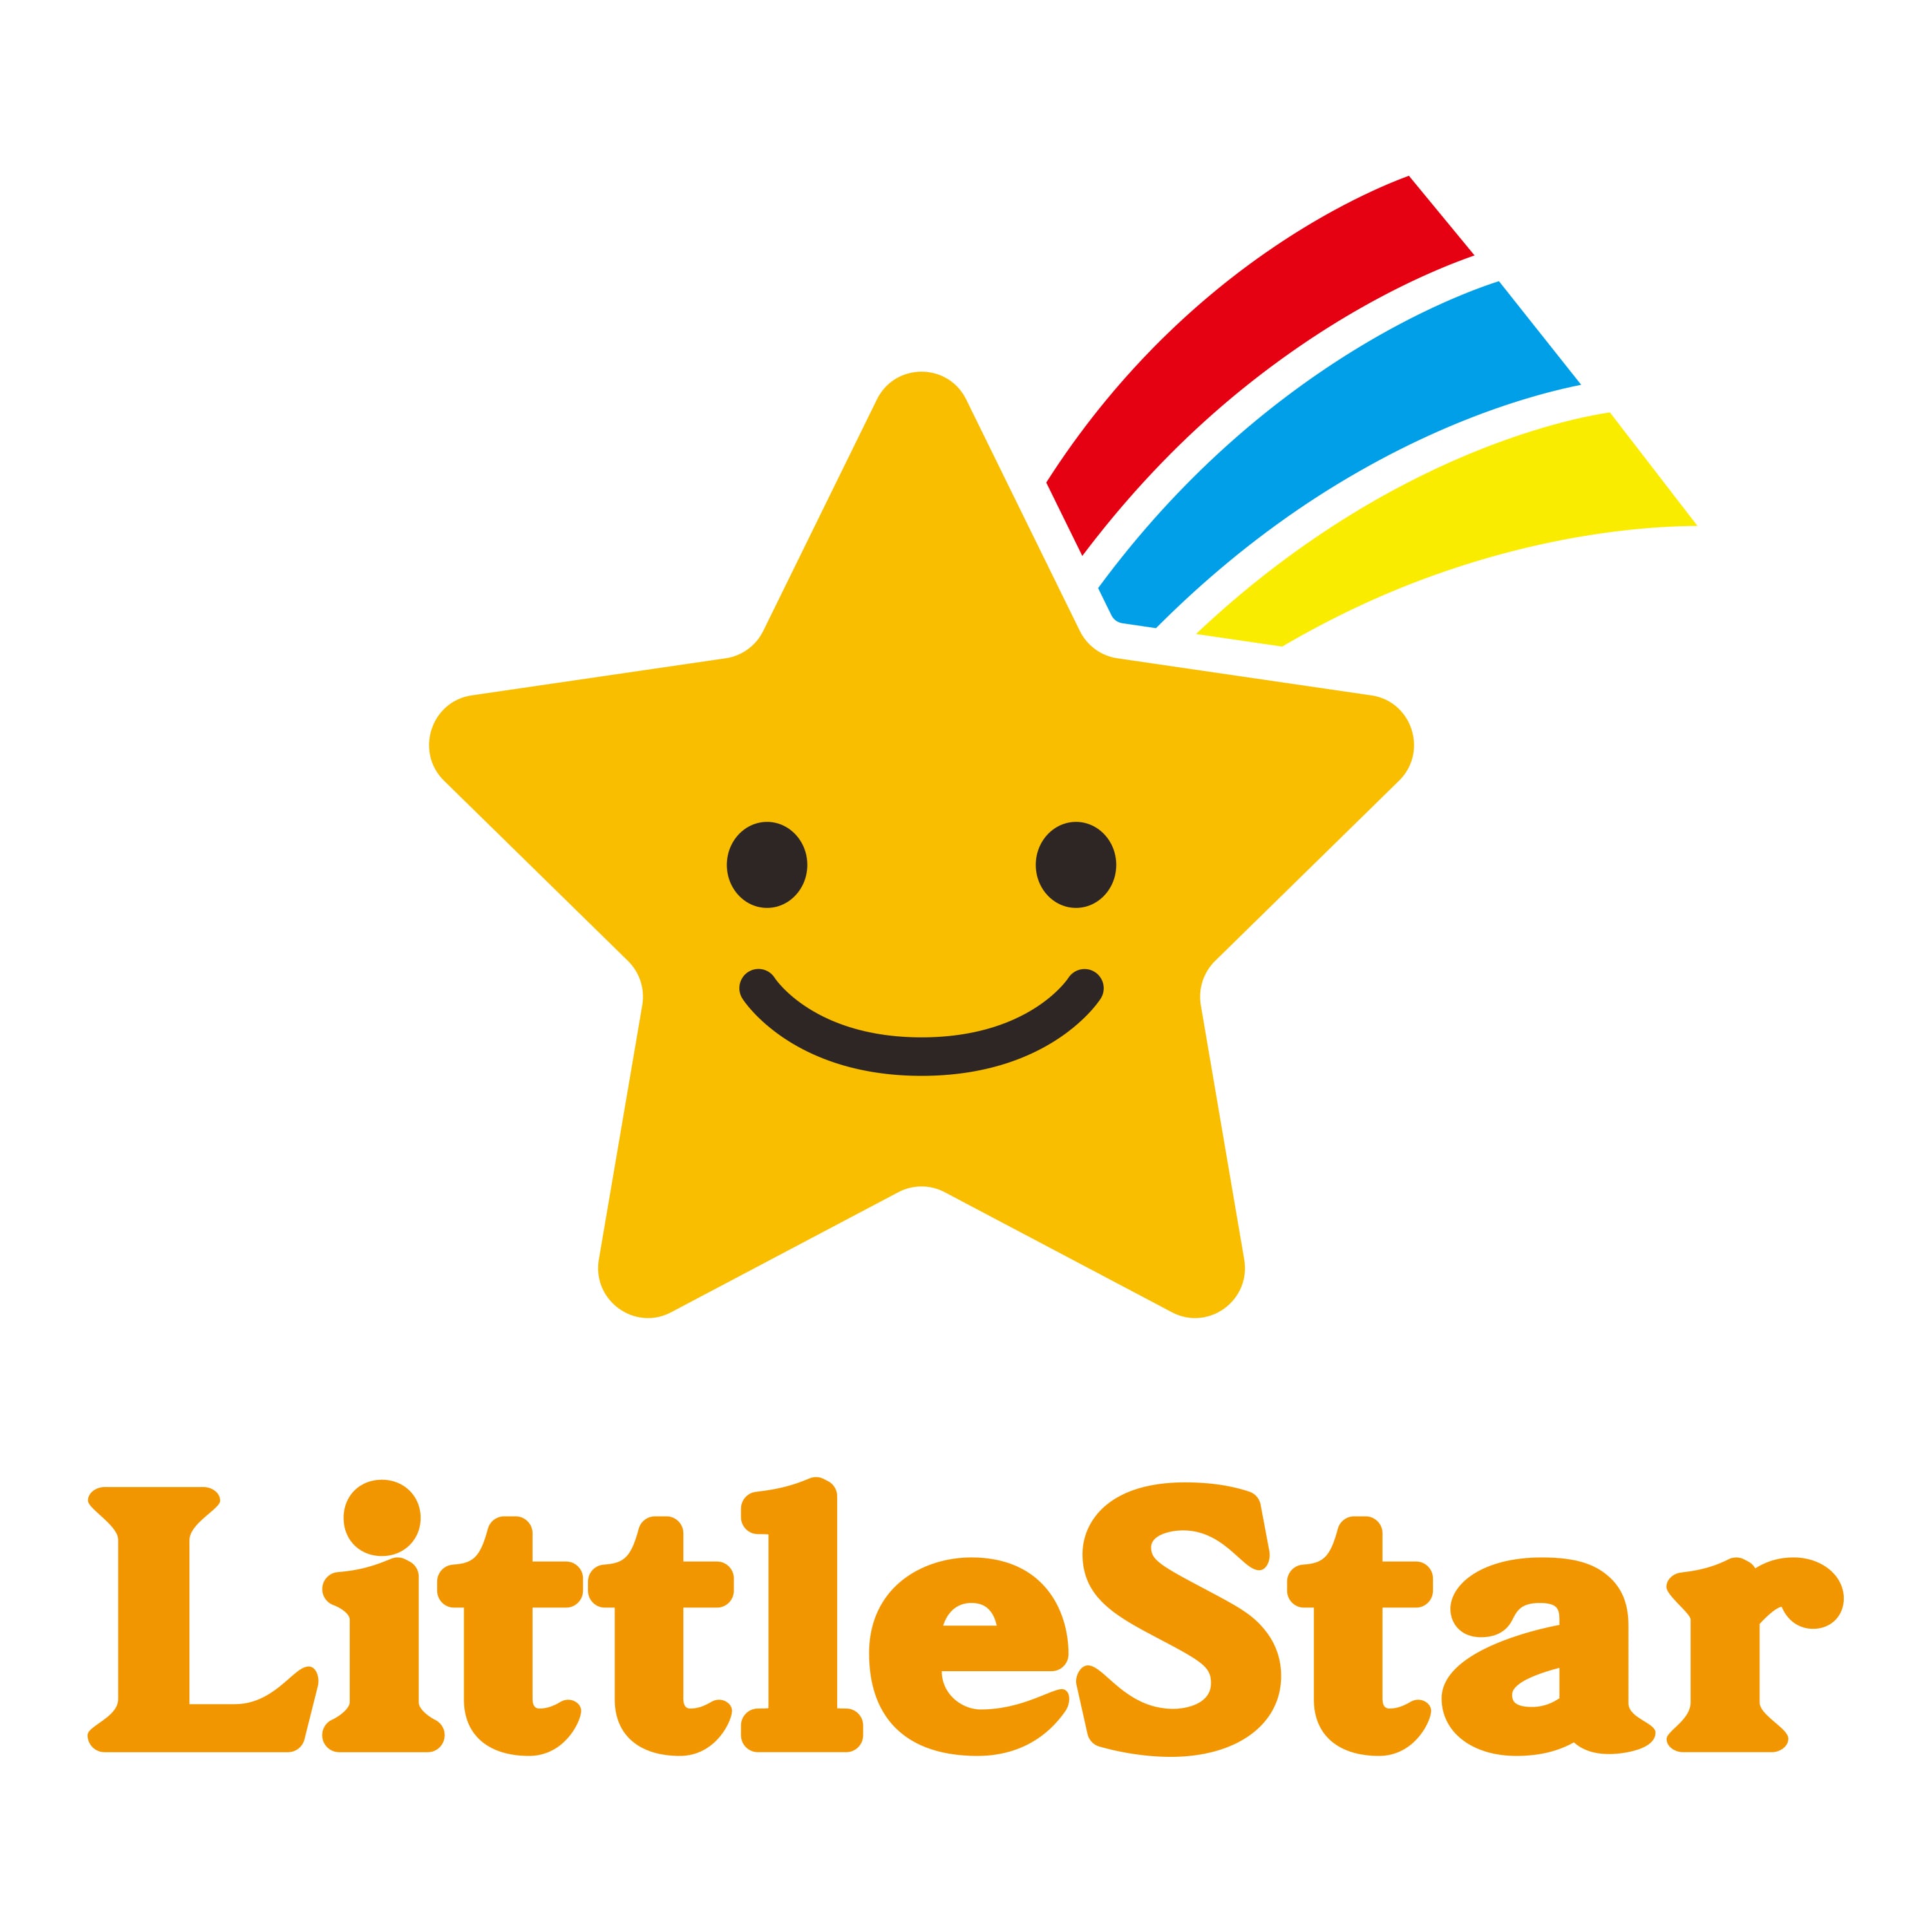 Little Star